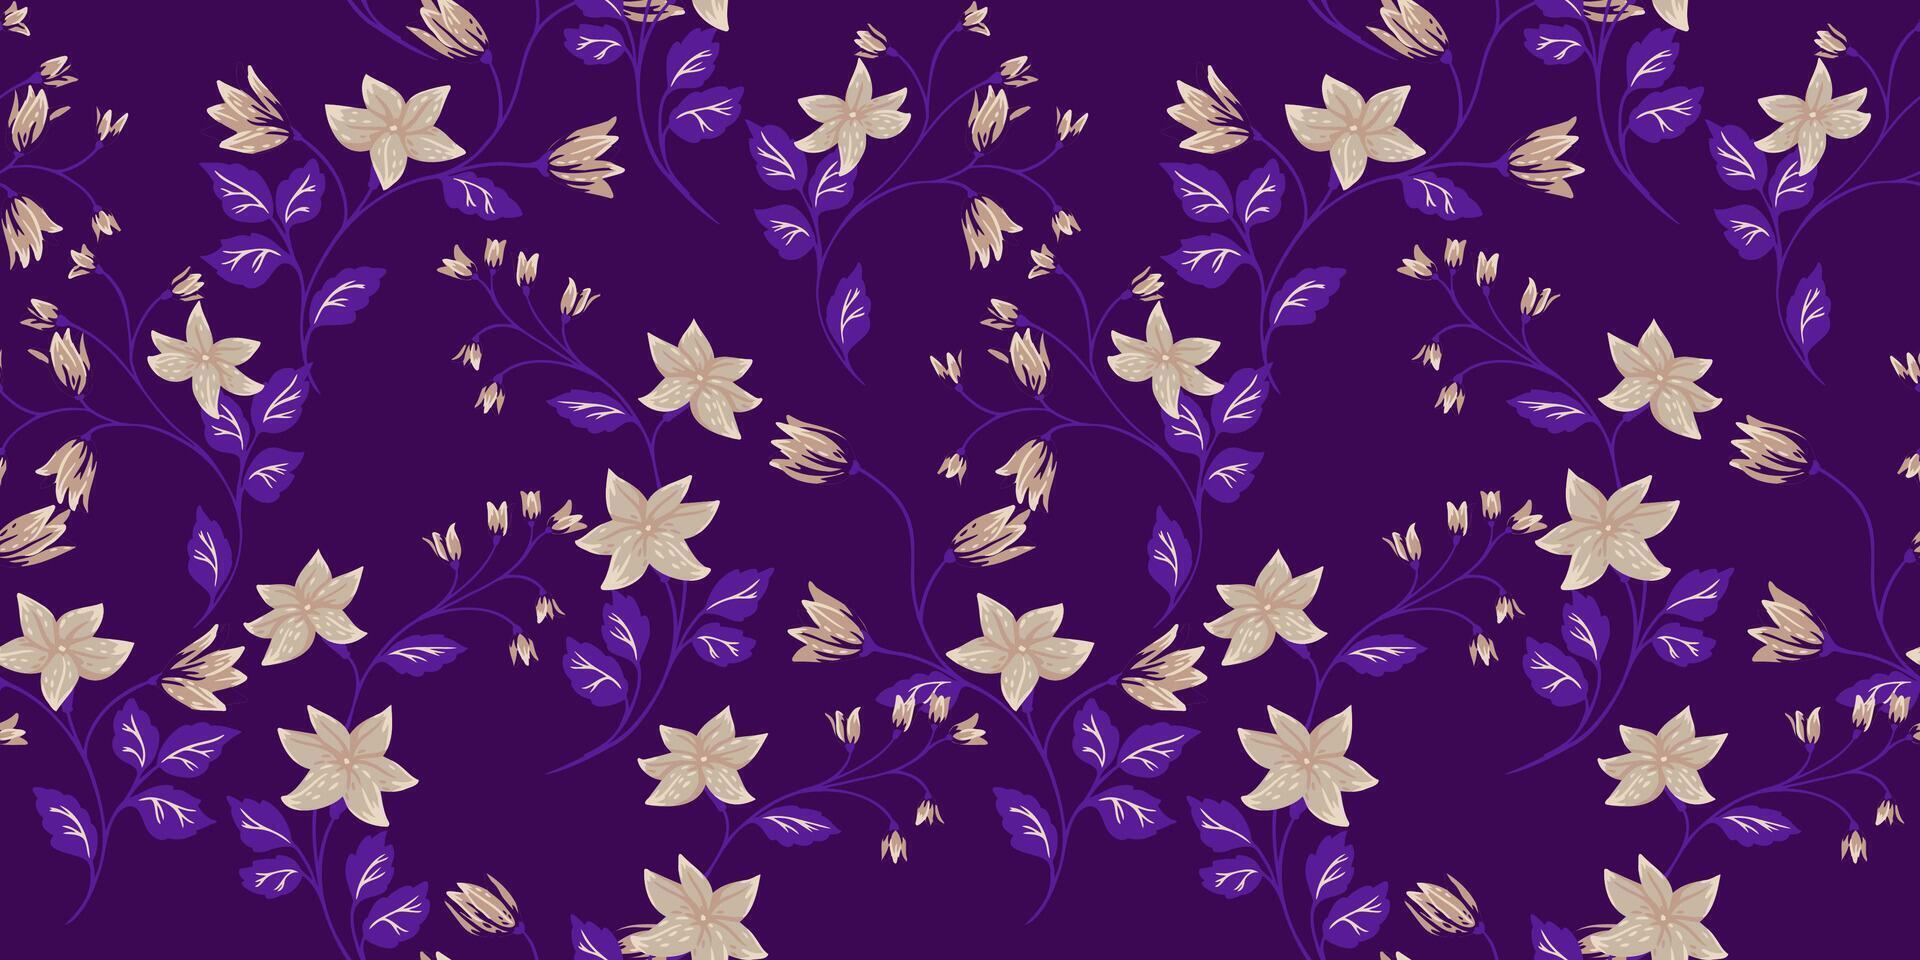 elegans monoton sömlös mönster med grenar med mycket liten blommor klockor, små löv. hand dragen illustration. abstrakt konstnärlig blommig stjälkar utskrift sammanflätade i en violett bakgrund. vektor